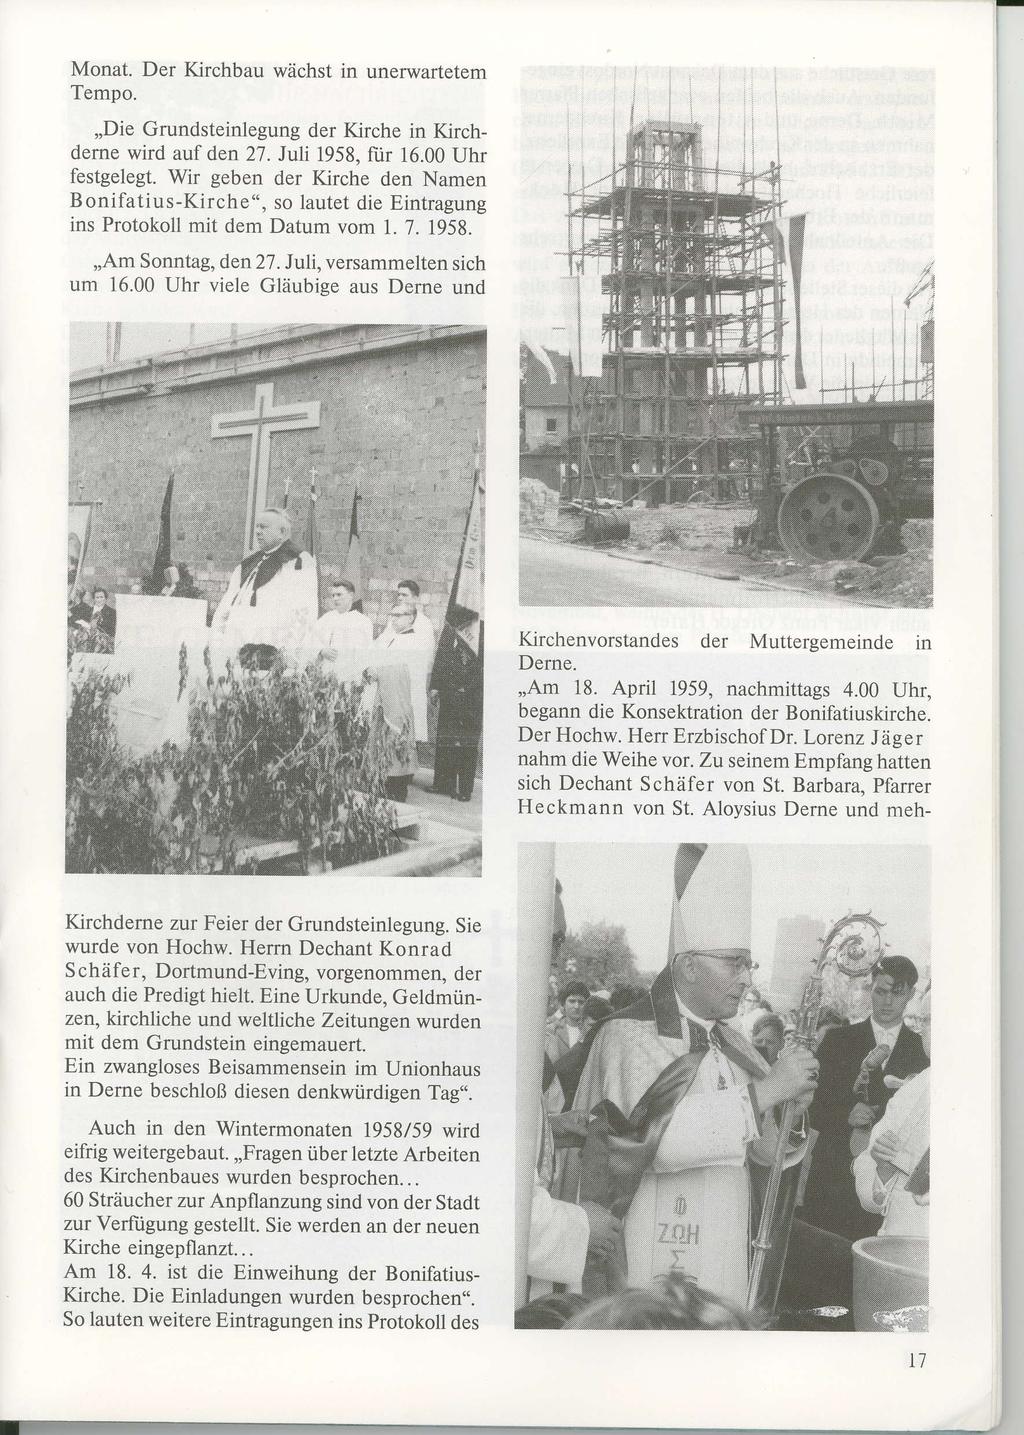 - Monat. Der Kirchbau wächst in unerwartetem Tempo.,,Die Grundsteinlegung der Kirche in Kirchdeme wird auf den 27. Juli 1958, für 16.00 Uhr festgelegt.